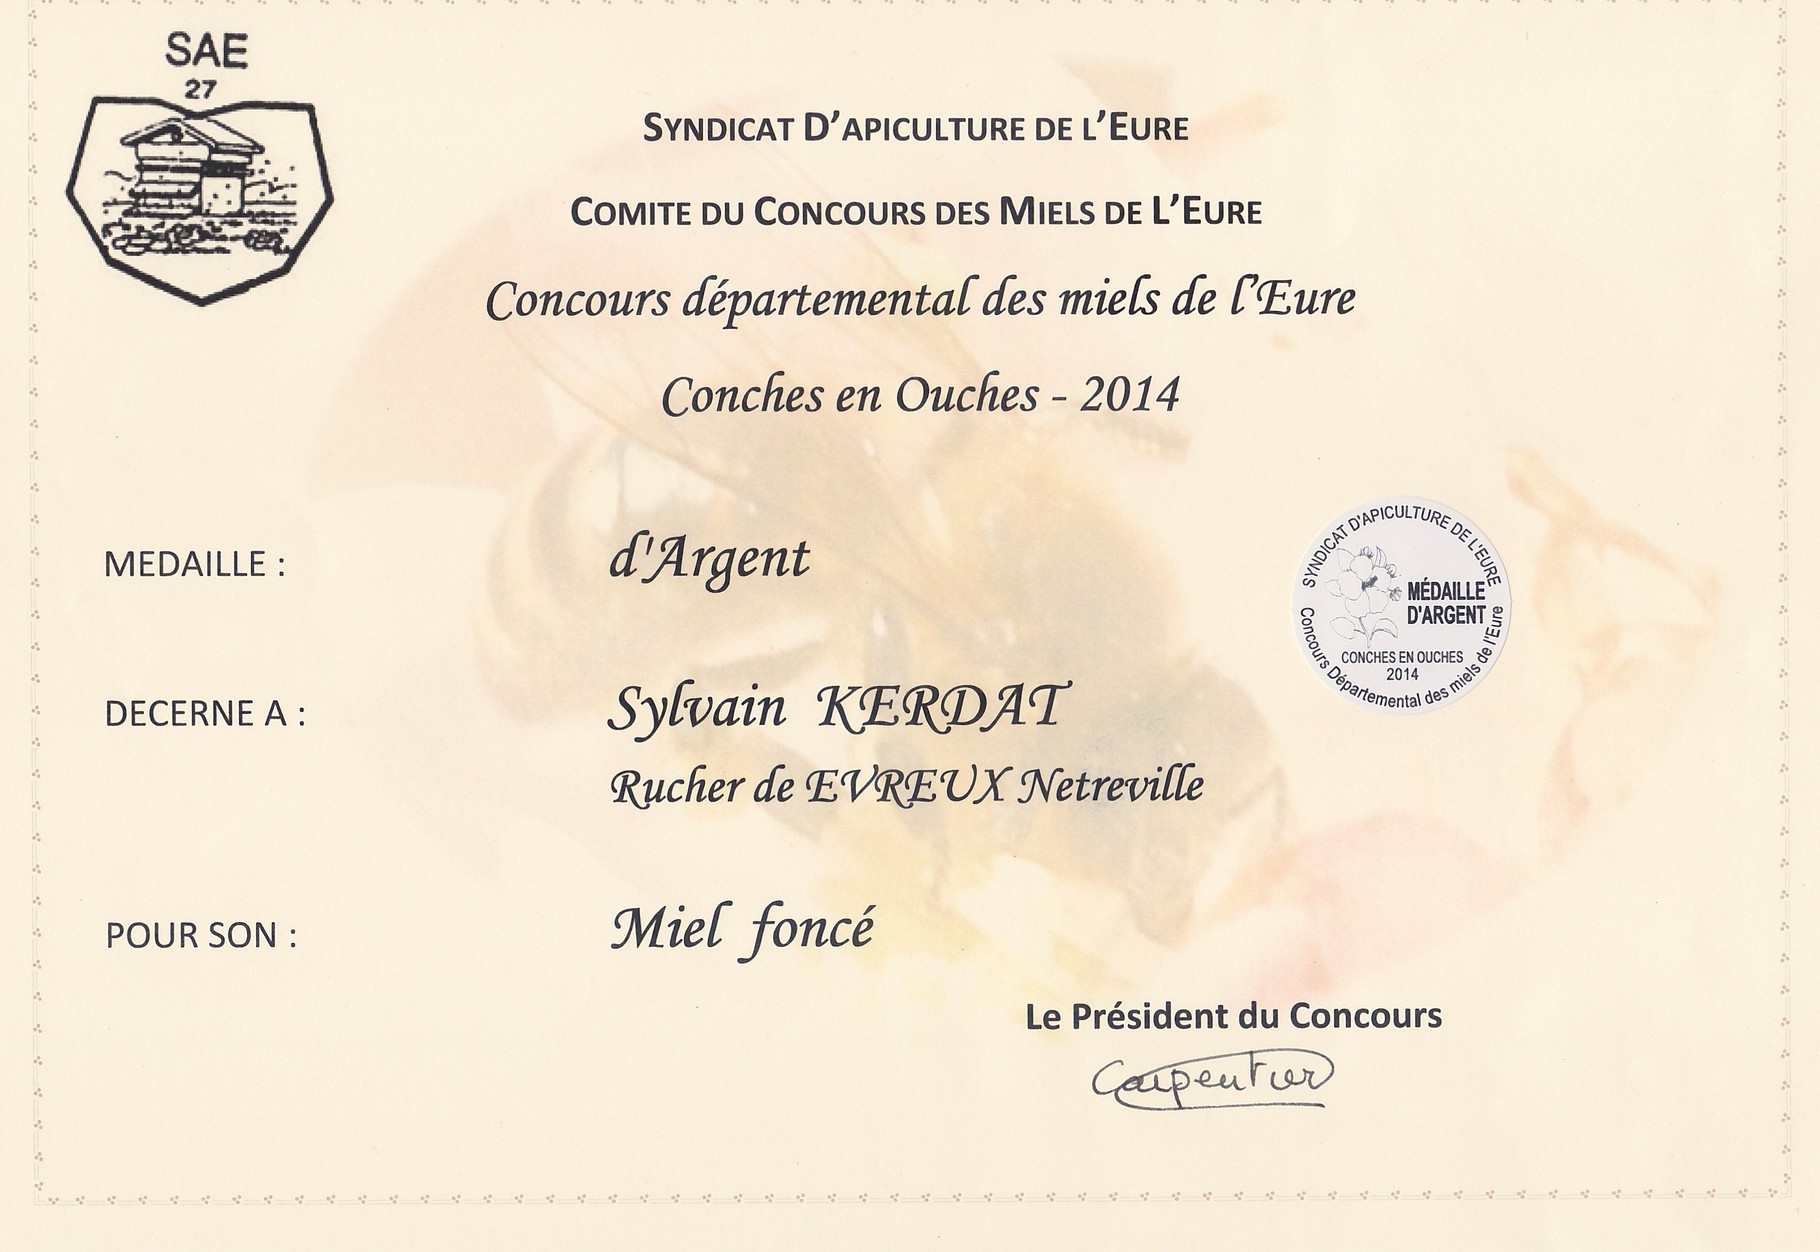 Concours d'épartemental des miels de l'Eure          Medaille d'ARGENT 2014